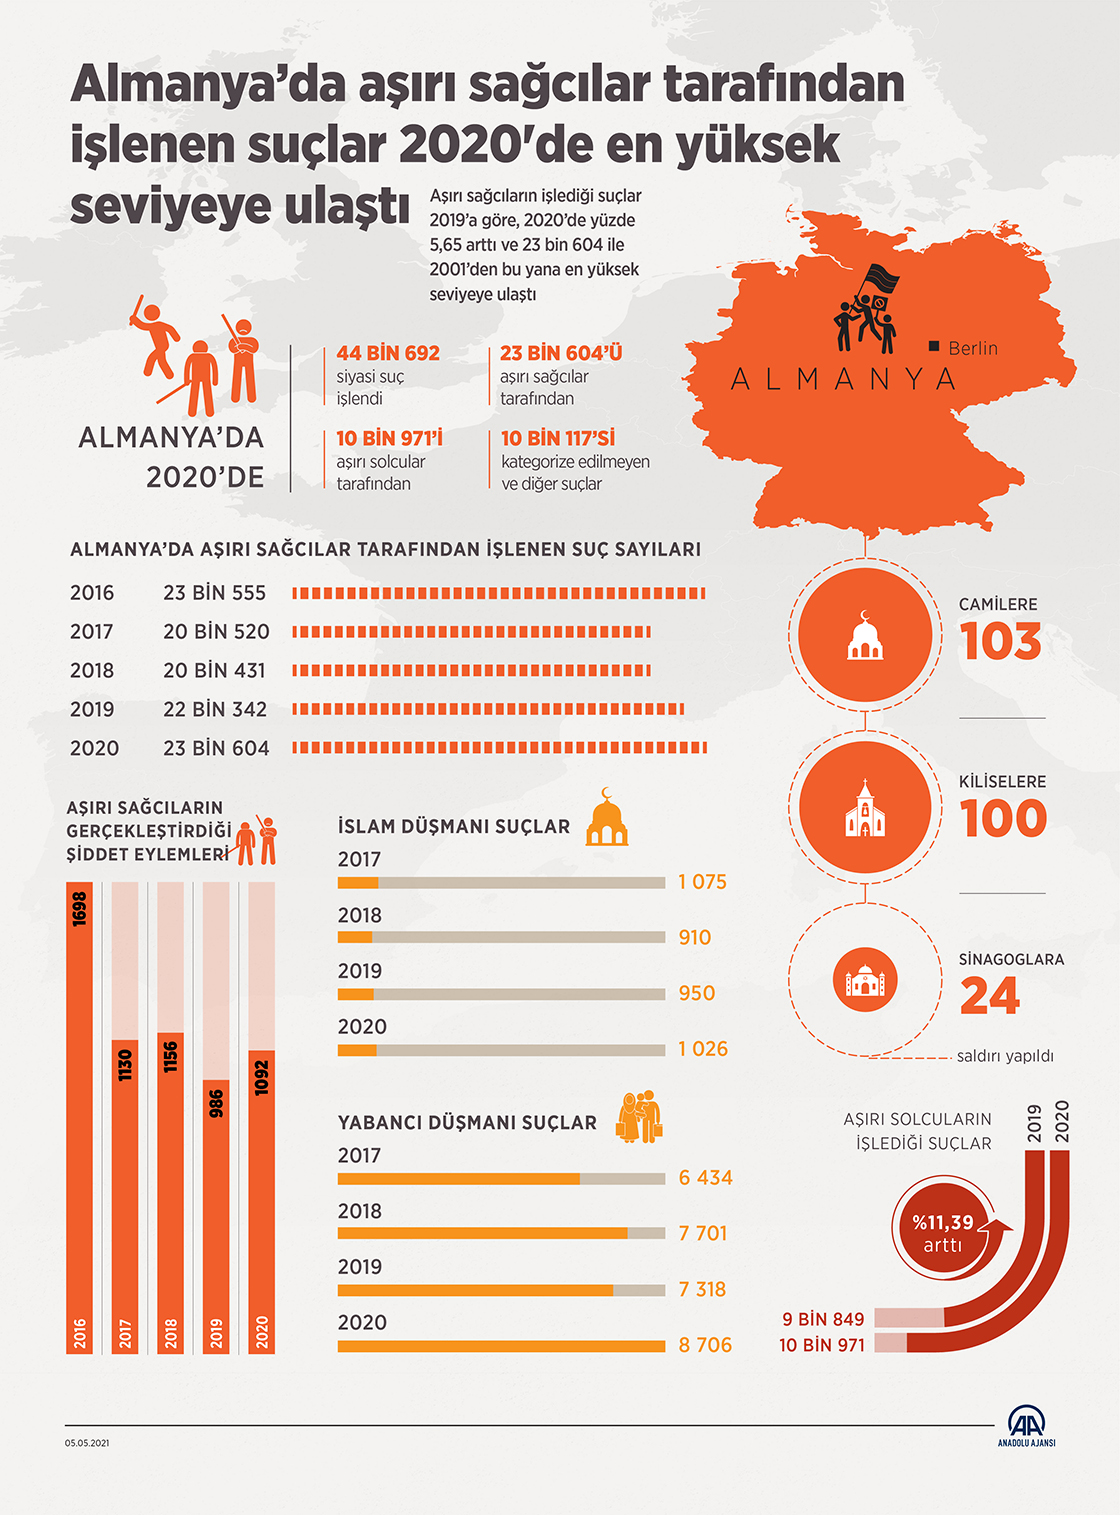 Almanya’da aşırı sağcılar tarafından işlenen suçlar 2020'de en yüksek seviyeye ulaştı